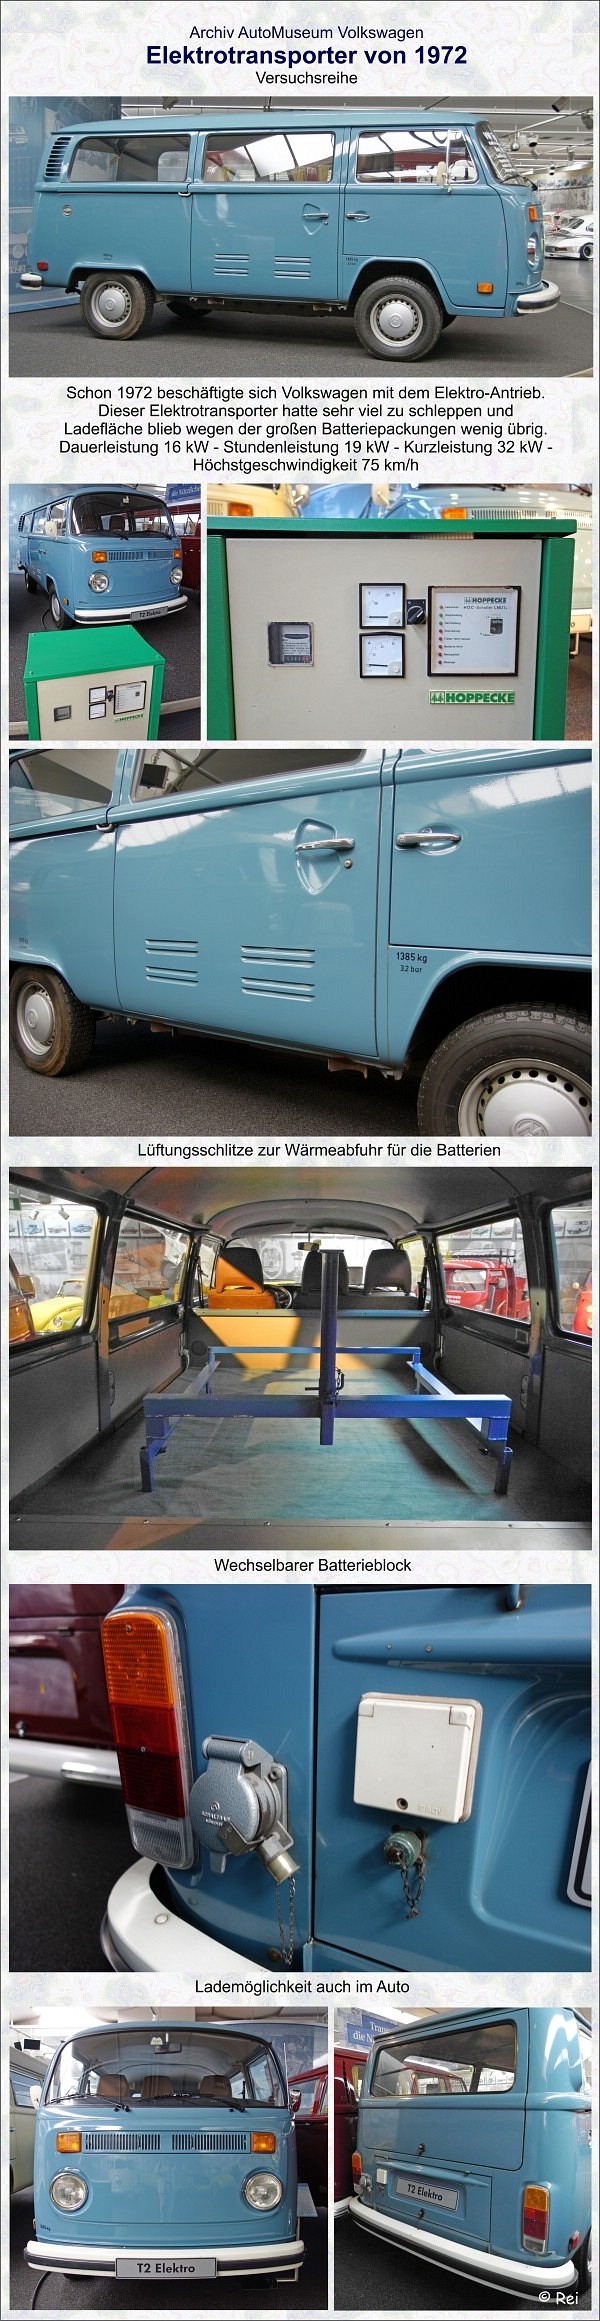 VW Elektrotransporter von 1972